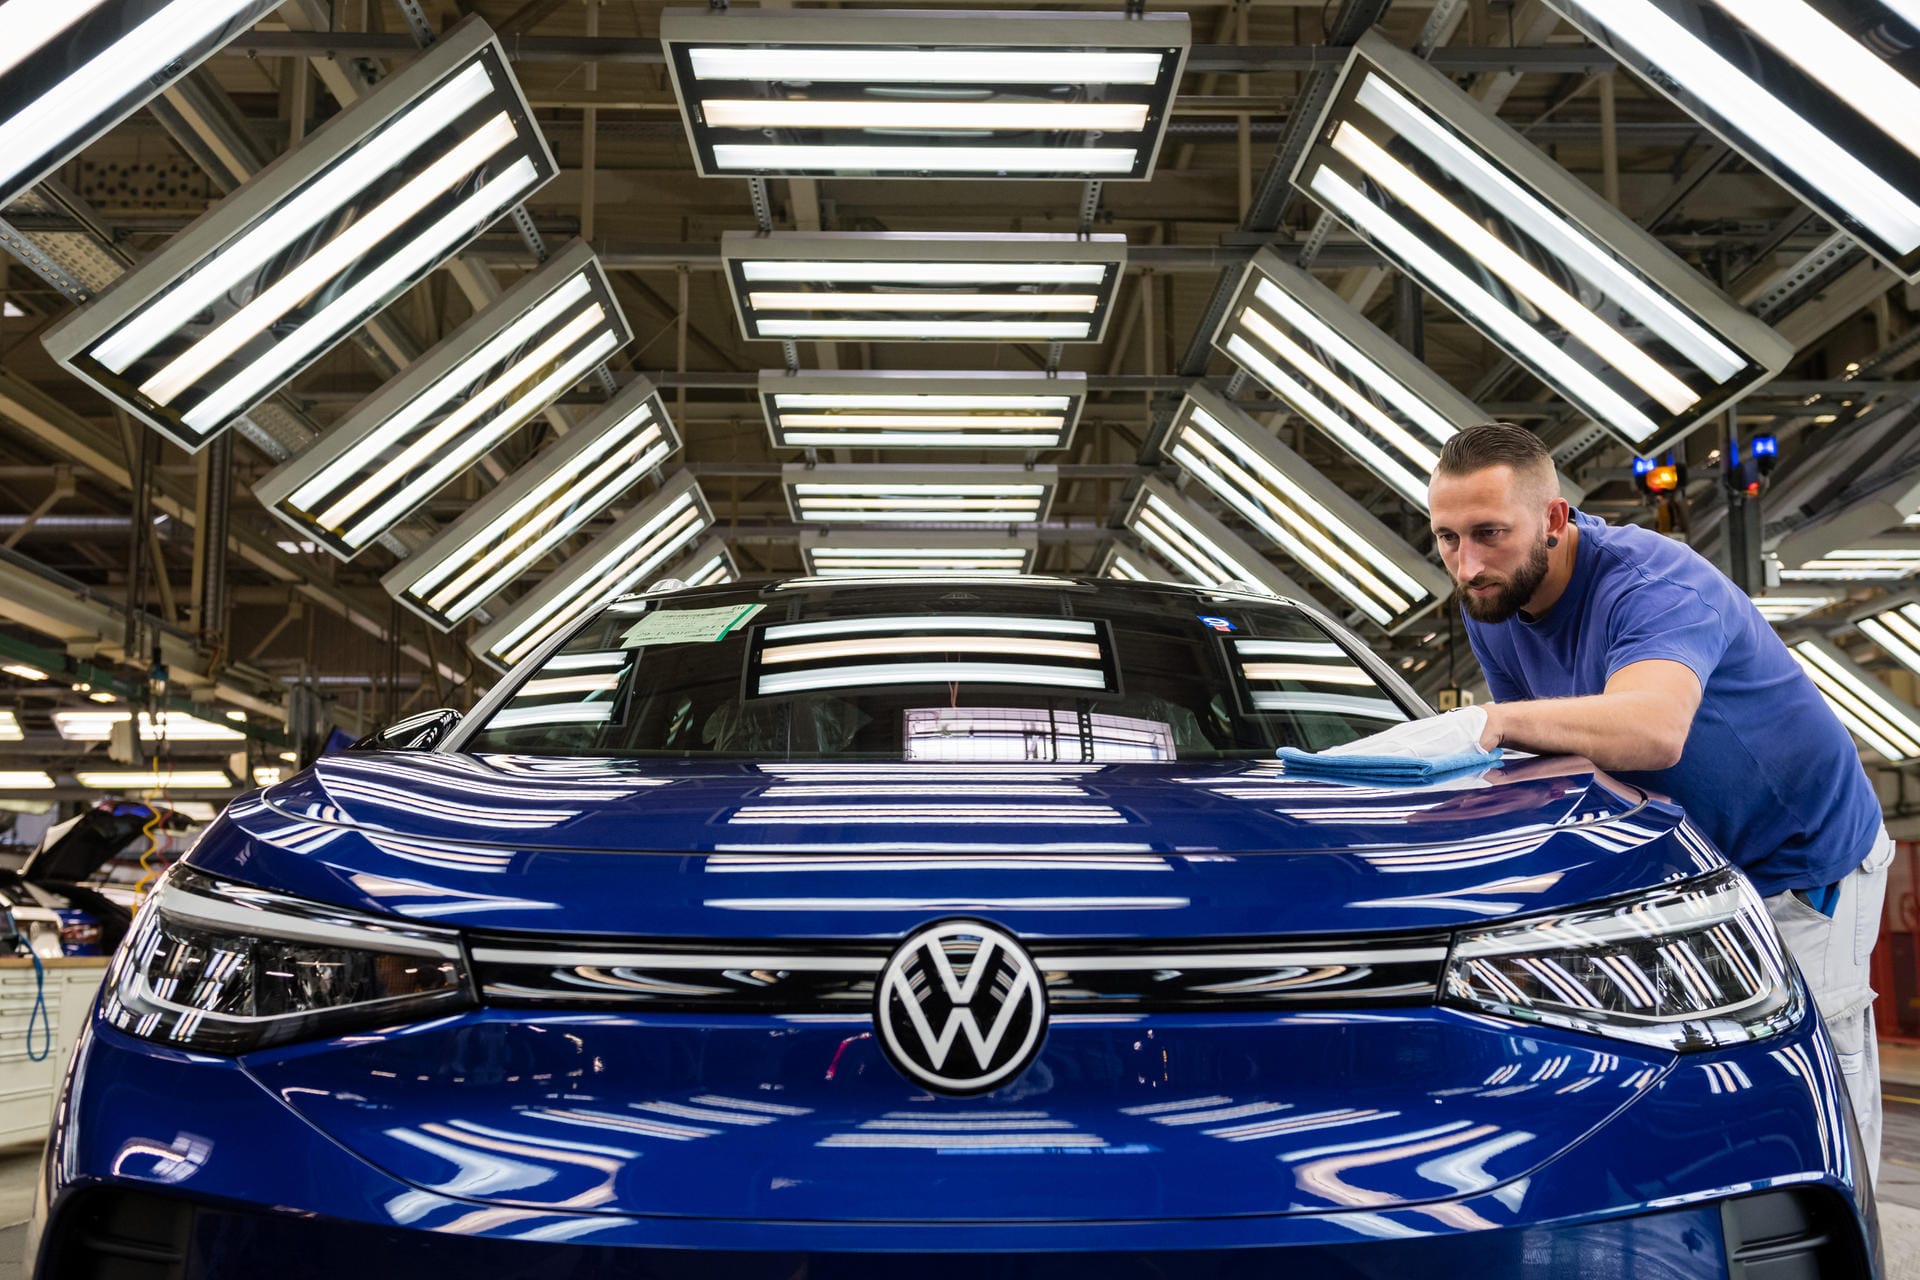 Mit Volkswagen schafft es auch der dritte große Autobauer in die Liste. Volkswagen ist international aktiv und der größte Autobauer Europa. In Deutschland hat das Unternehmen allerdings zuletzt Schlagzeilen durch interne Streitereien gemacht. VW-Chef Herbert Diess stößt mit seiner ambitionierten E-Mobilität-Strategie immer wieder auf Widerstand.